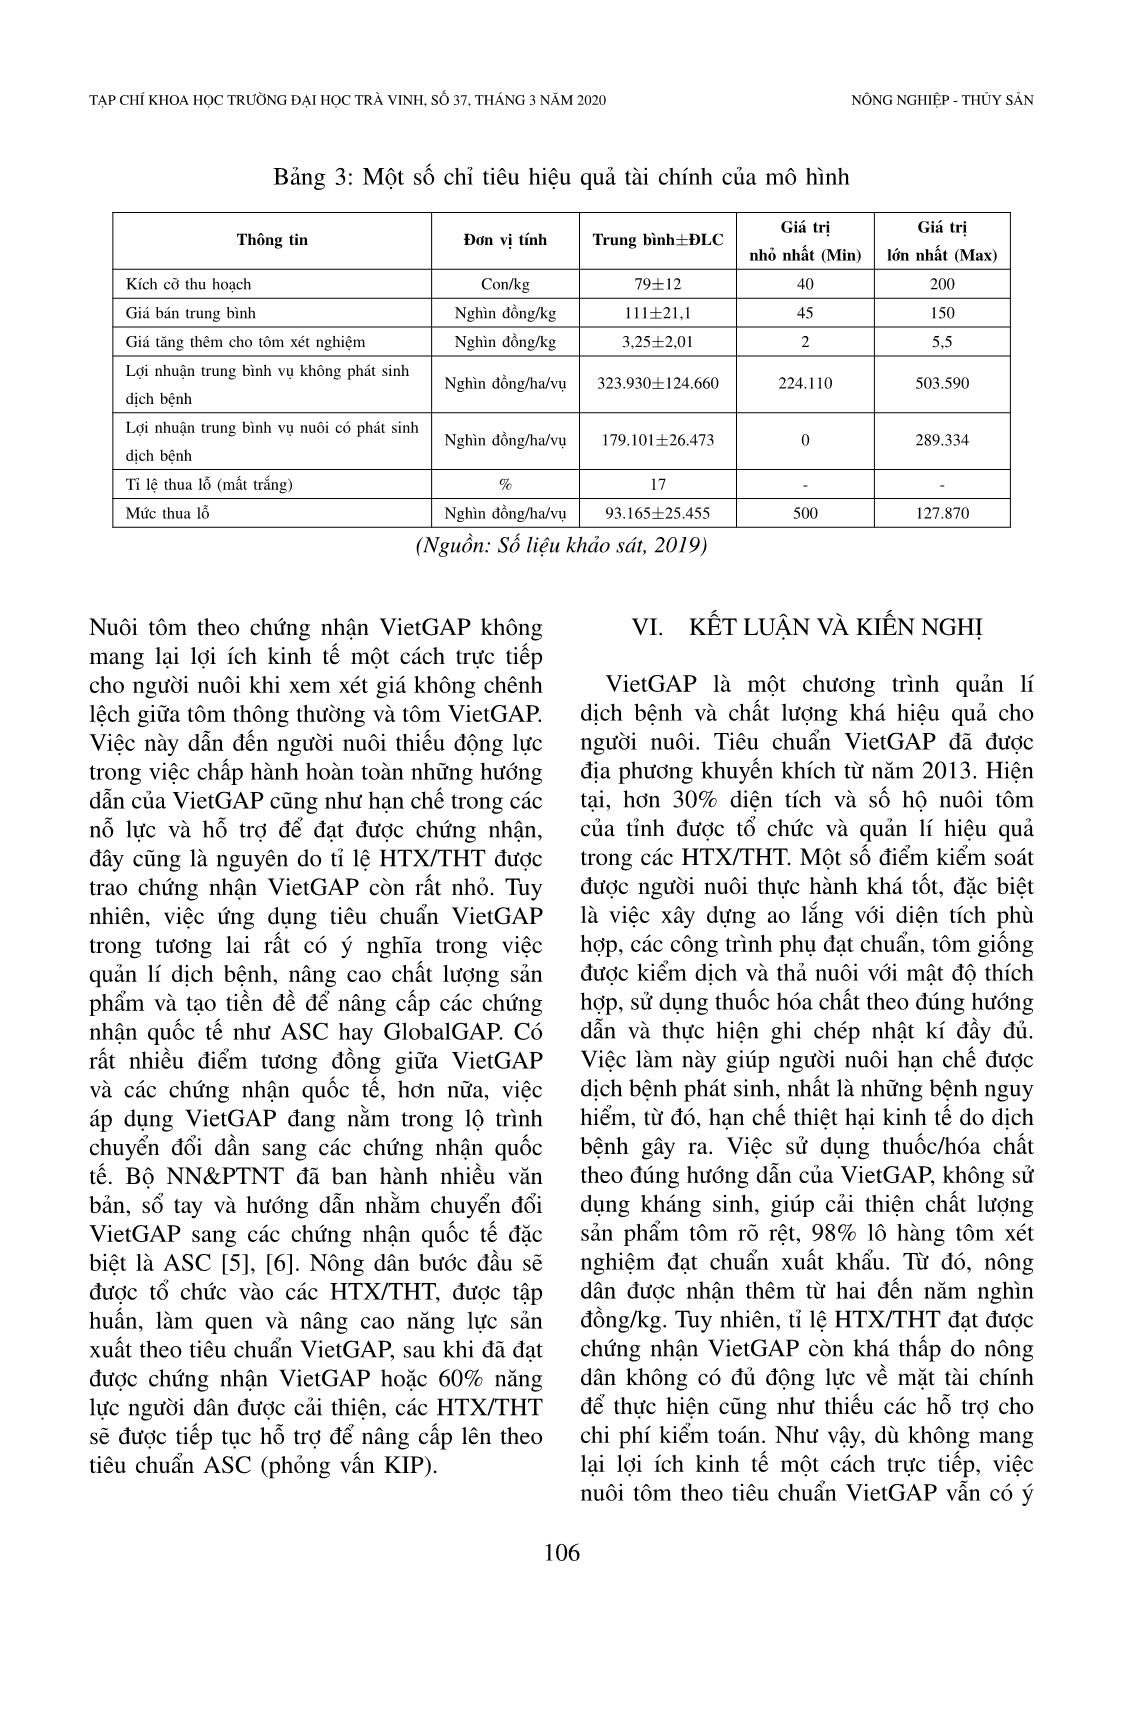 Hiện trạng và vai trò của chứng nhận Vietgap trong nuôi tôm: Nghiên cứu trường hợp nuôi tôm thẻ chân trắng ở tỉnh Sóc Trăng, Việt Nam trang 9